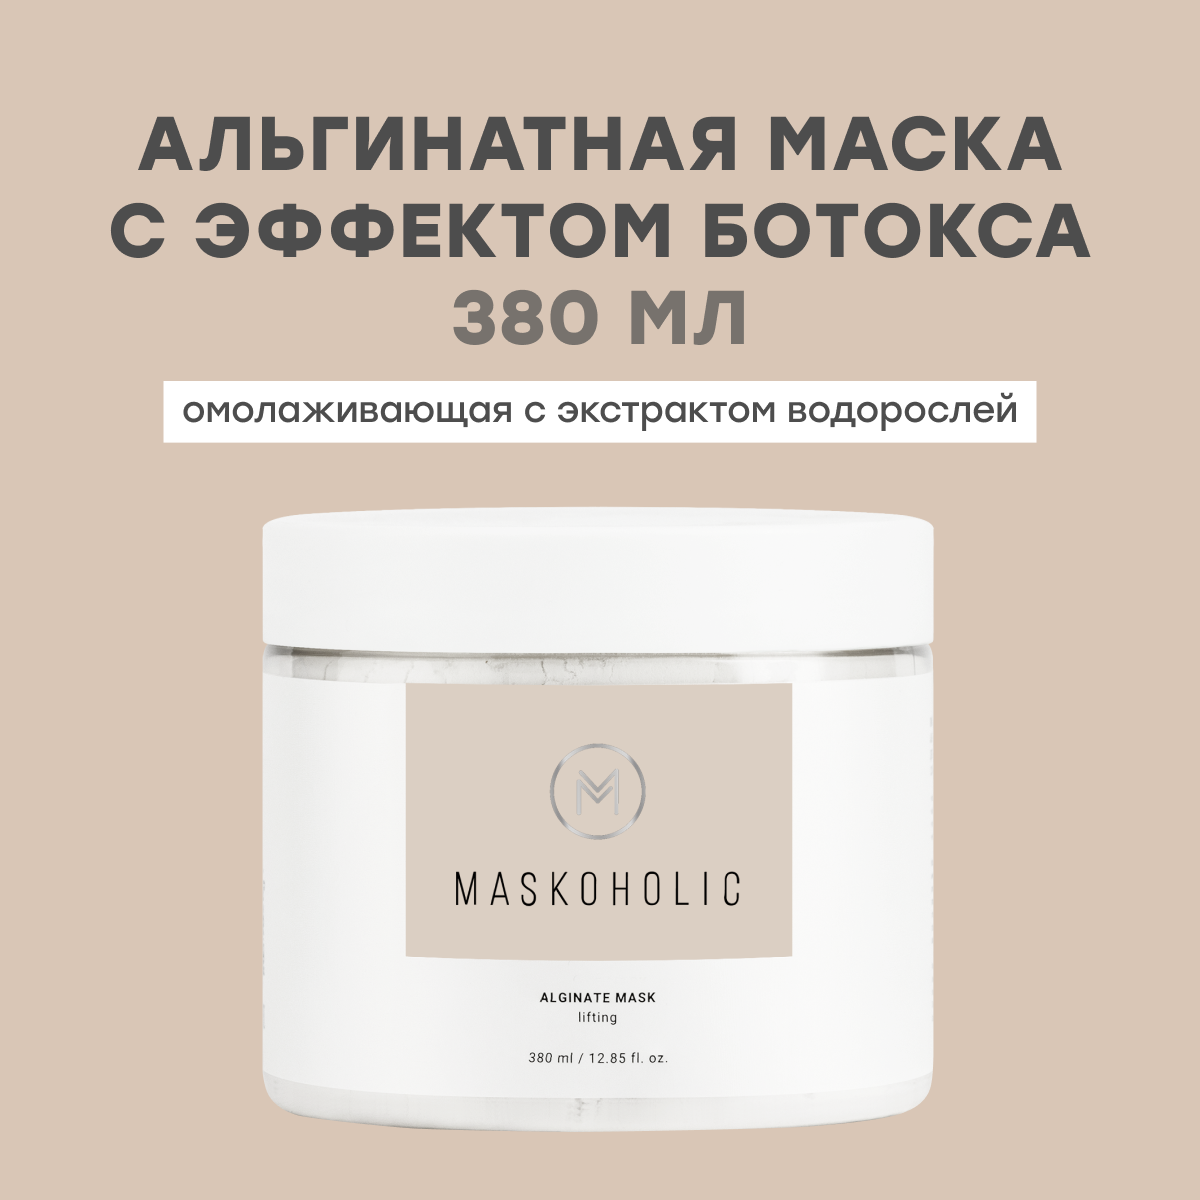 MASKOHOLIC / Альгинатная маска для лица омолаживающая с эффектом ботокса, 380 мл.